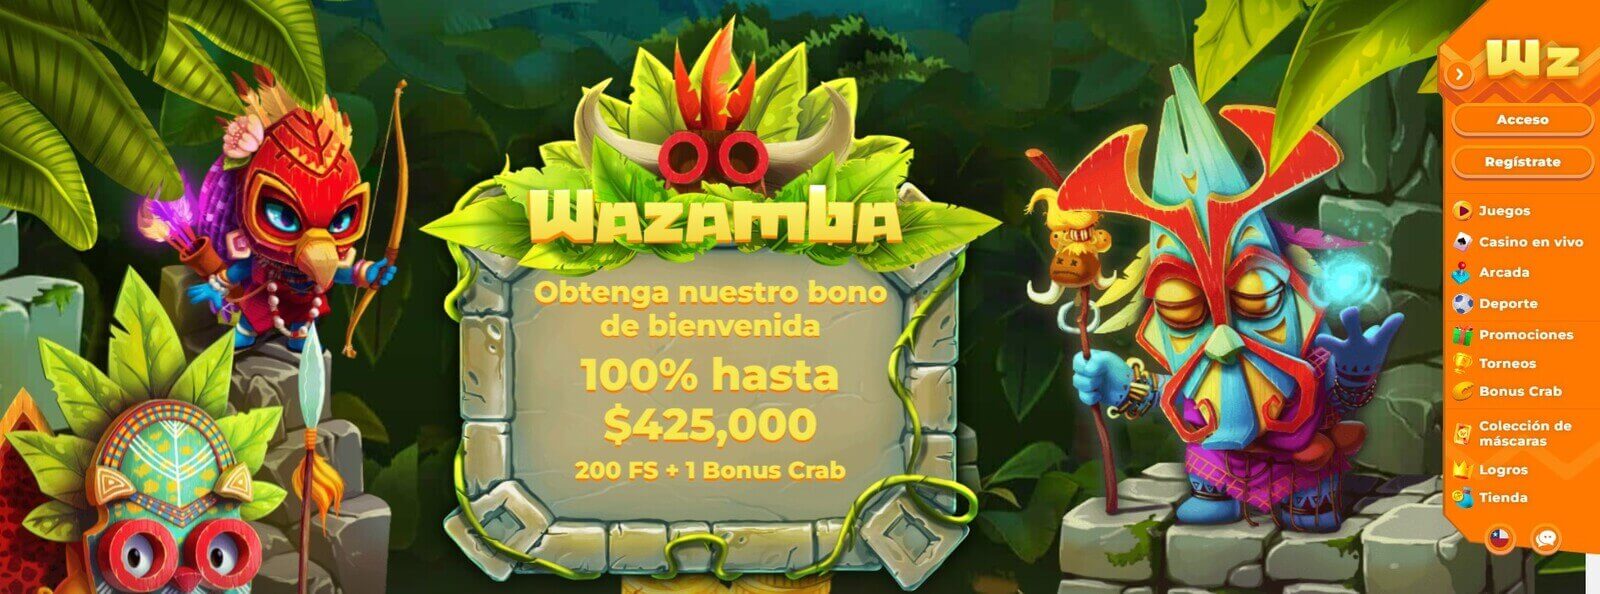 Reseña de Wazamba Casino online en Latinoamérica